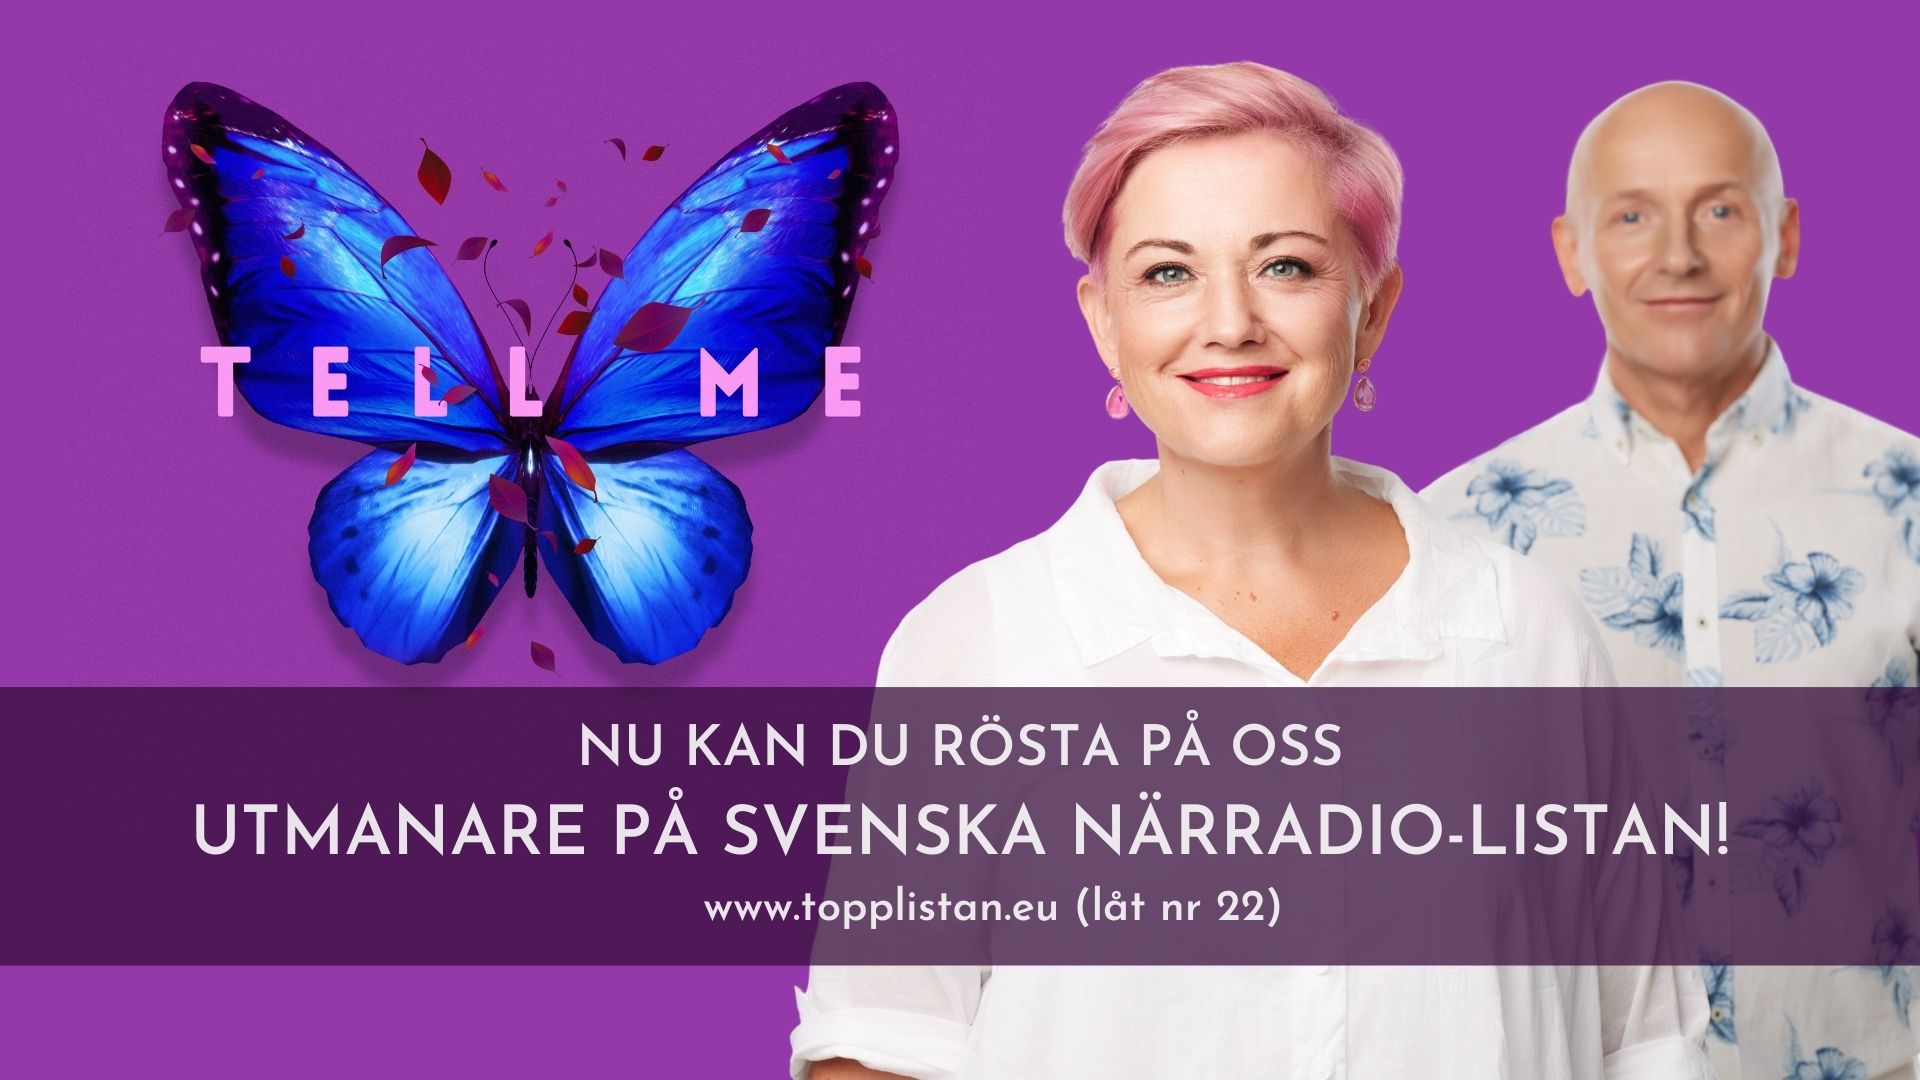 "Tell me" med Nomark är utmanare på Svenska närradiolistan